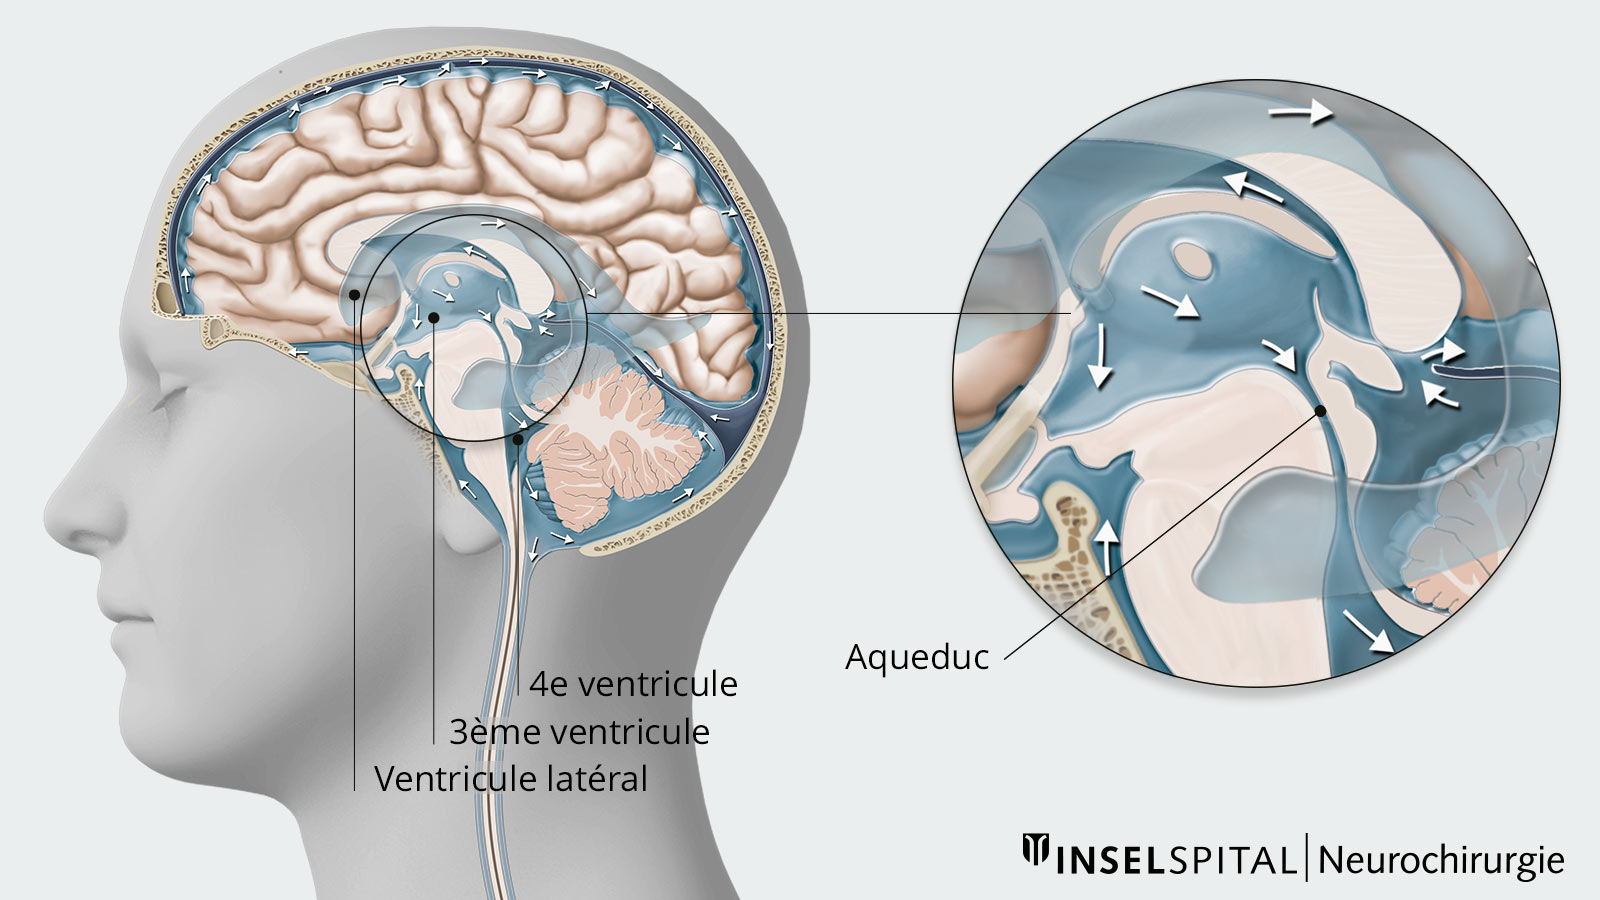 Dessin des ventricules cérébraux et de l'aqueduc entre les 3ème et 4ème ventricules cérébraux